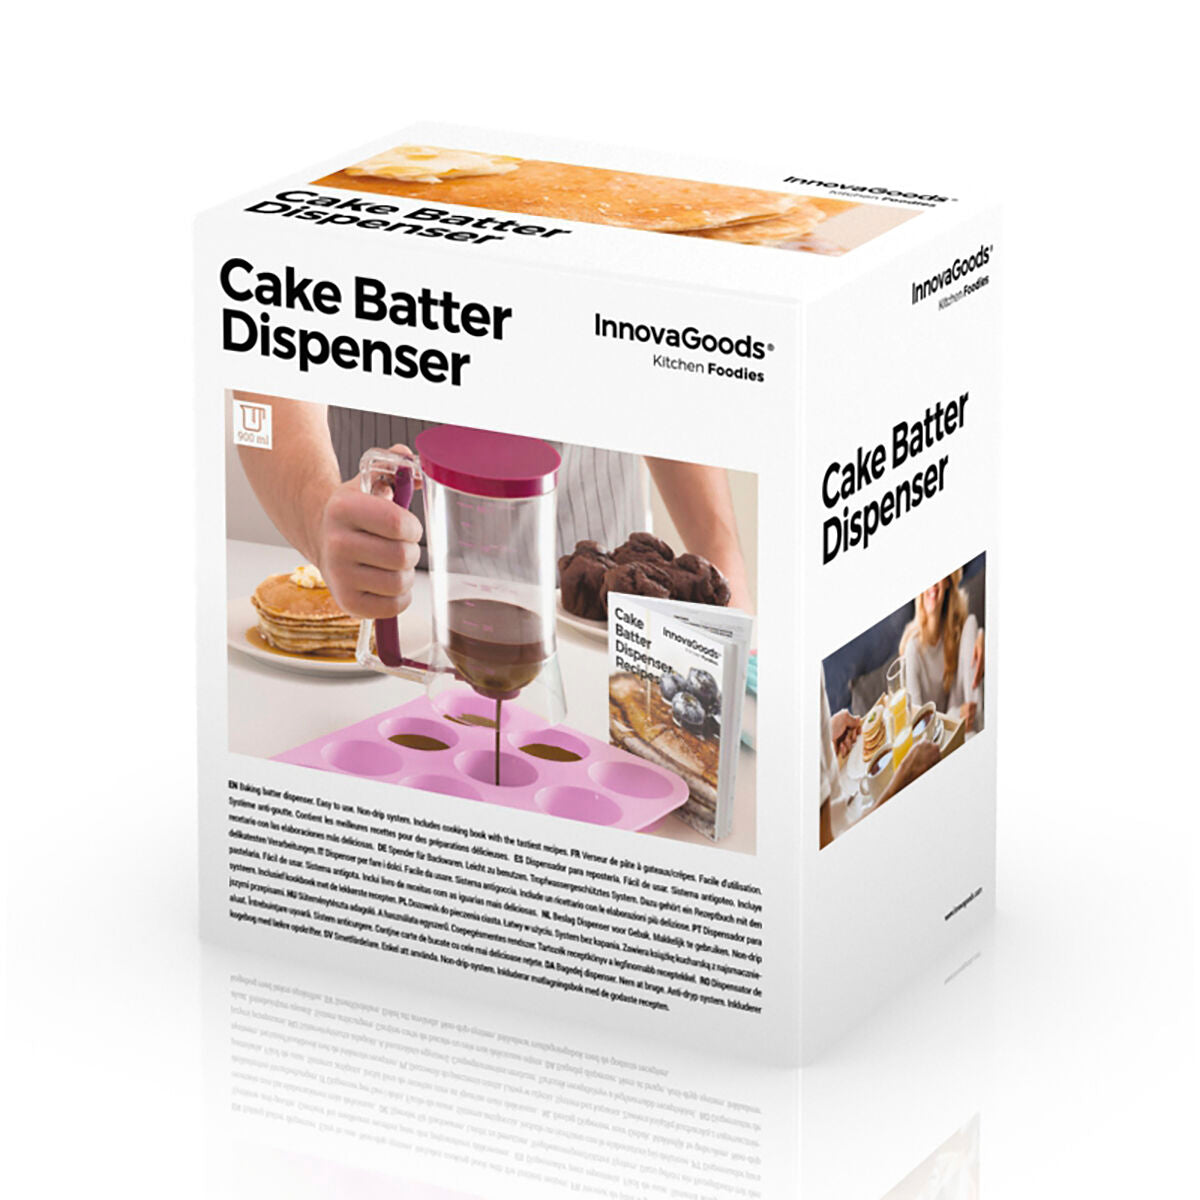 Cake batter dispenser